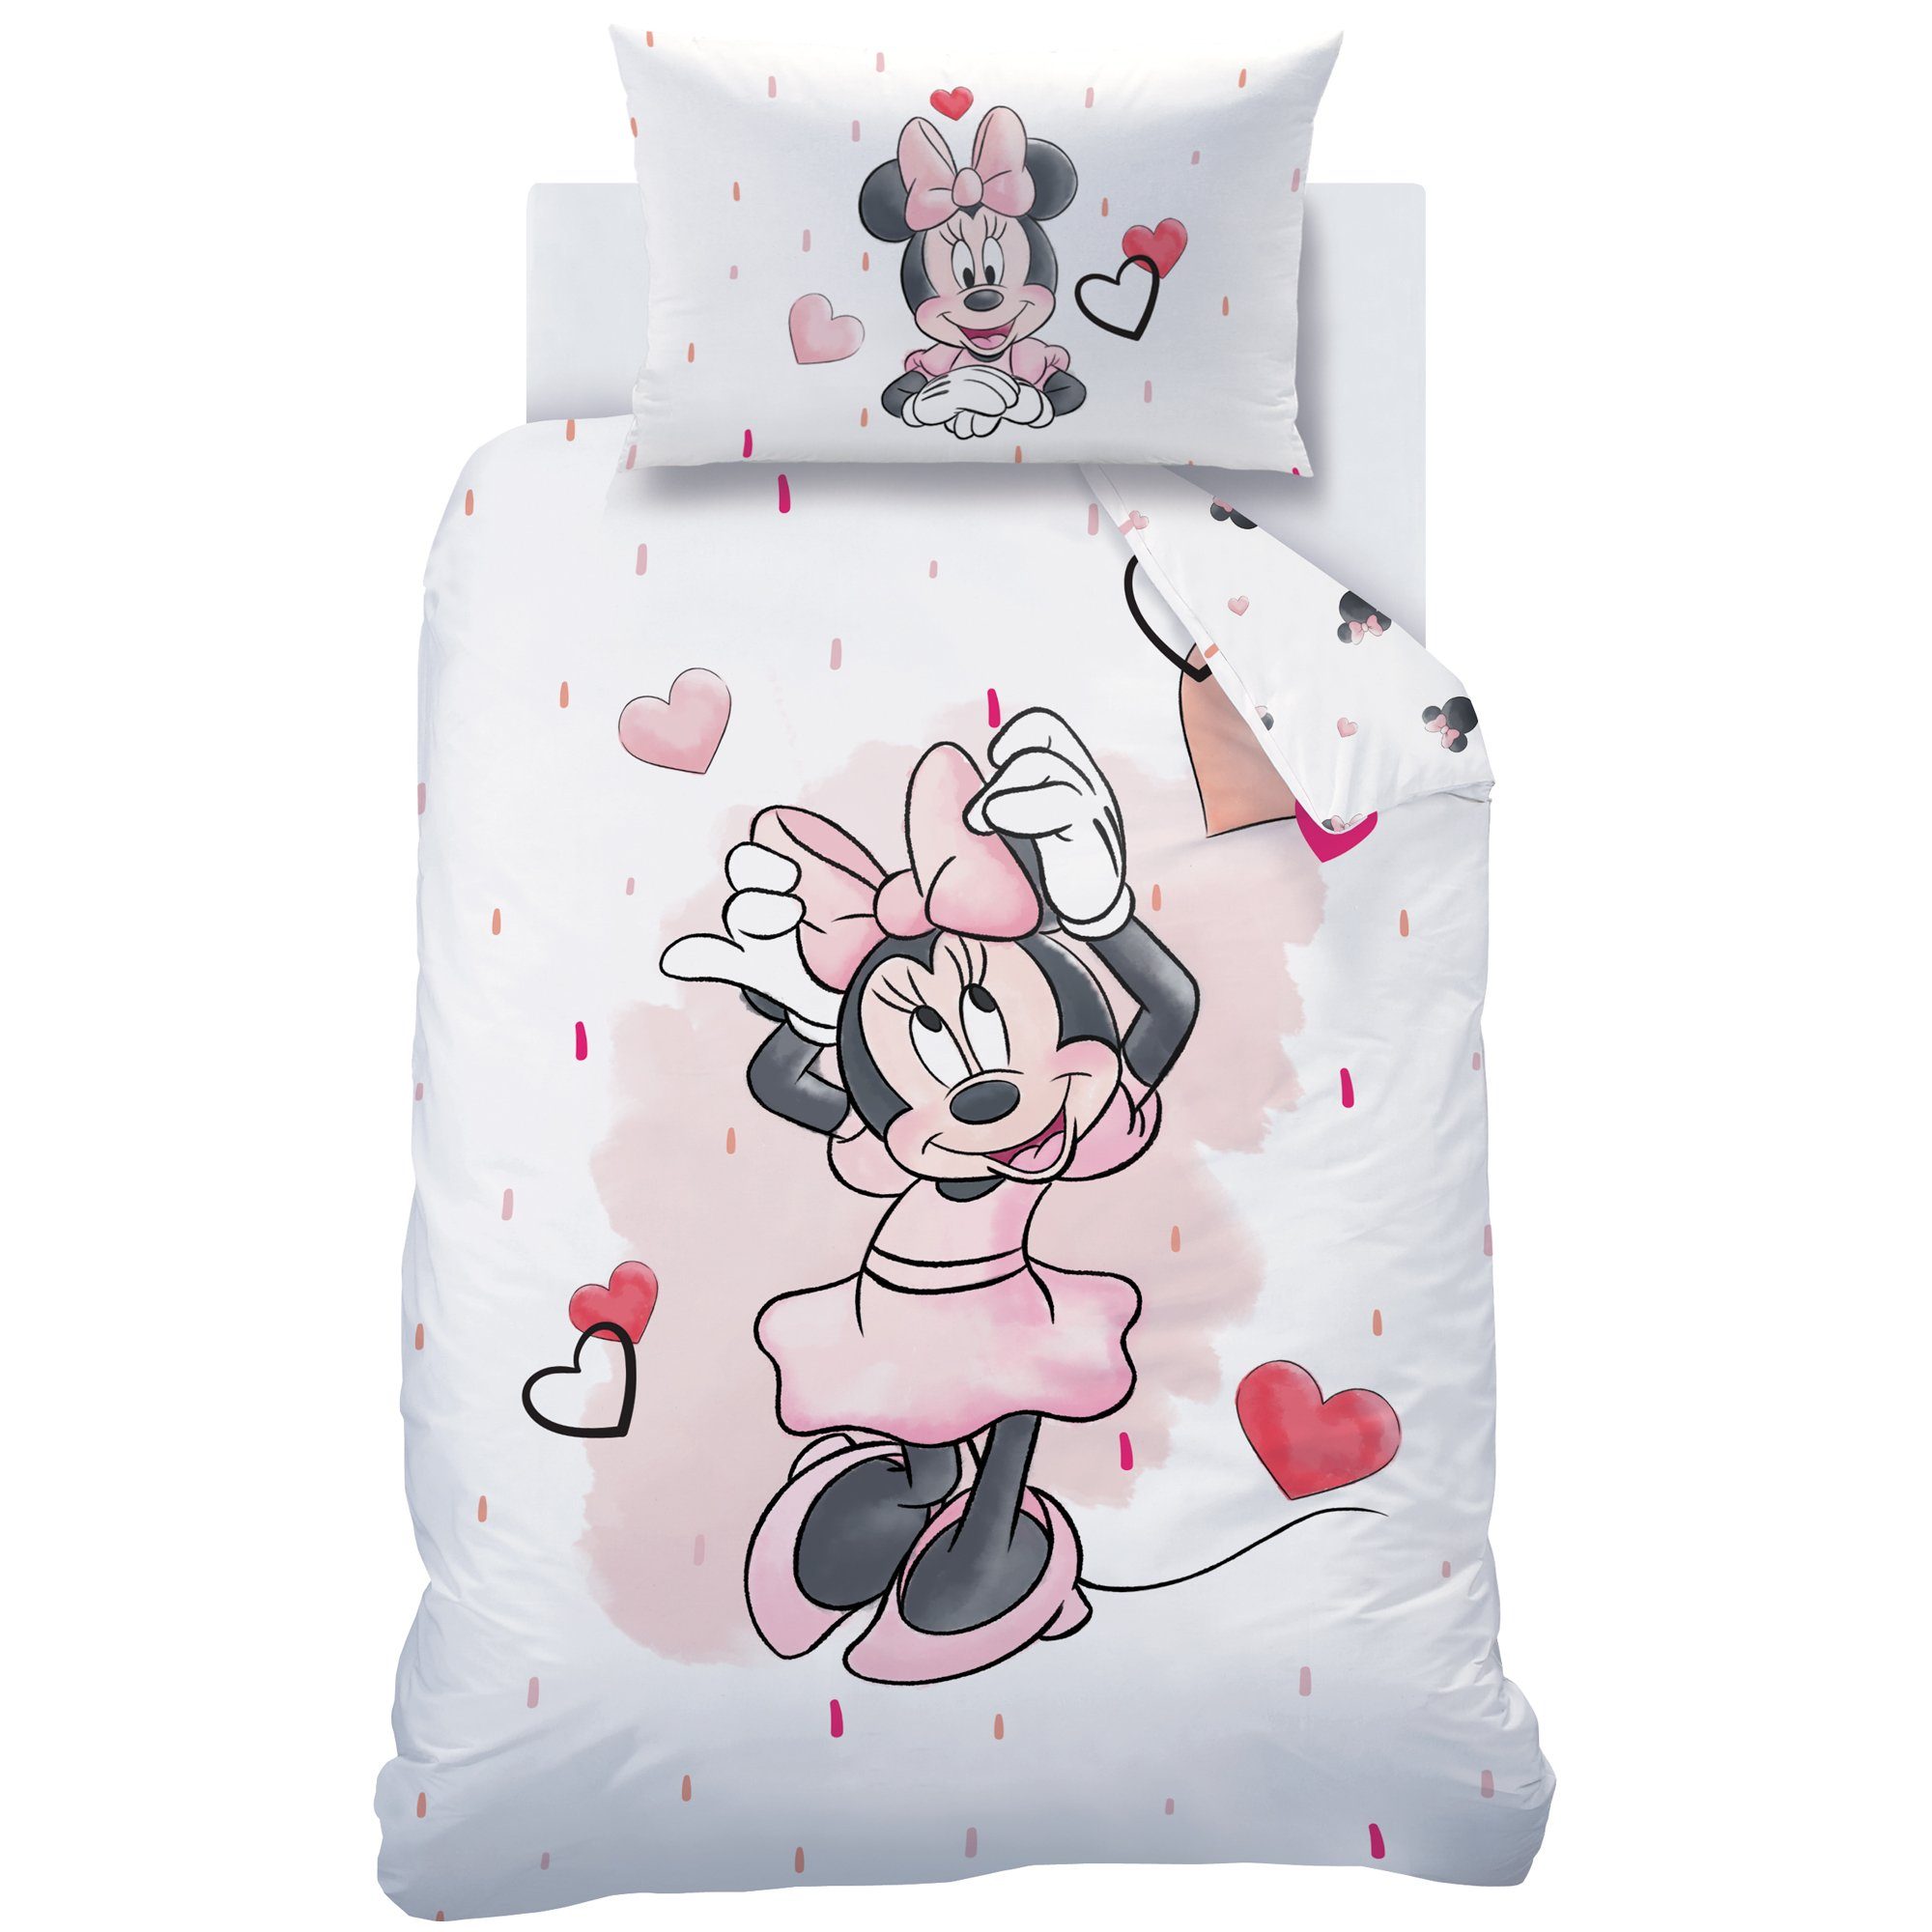 Babybettwäsche »Minnie Mouse Bettwäsche 100x135 + 40x60 cm 2 tlg., 100 %  Baumwolle in Biber, süße Disney Minnie Maus Kinderbettwäsche mit vielen  Herzchen in rosa / zartrosa, weiß & rot«, MTOnlinehandel online kaufen |  OTTO